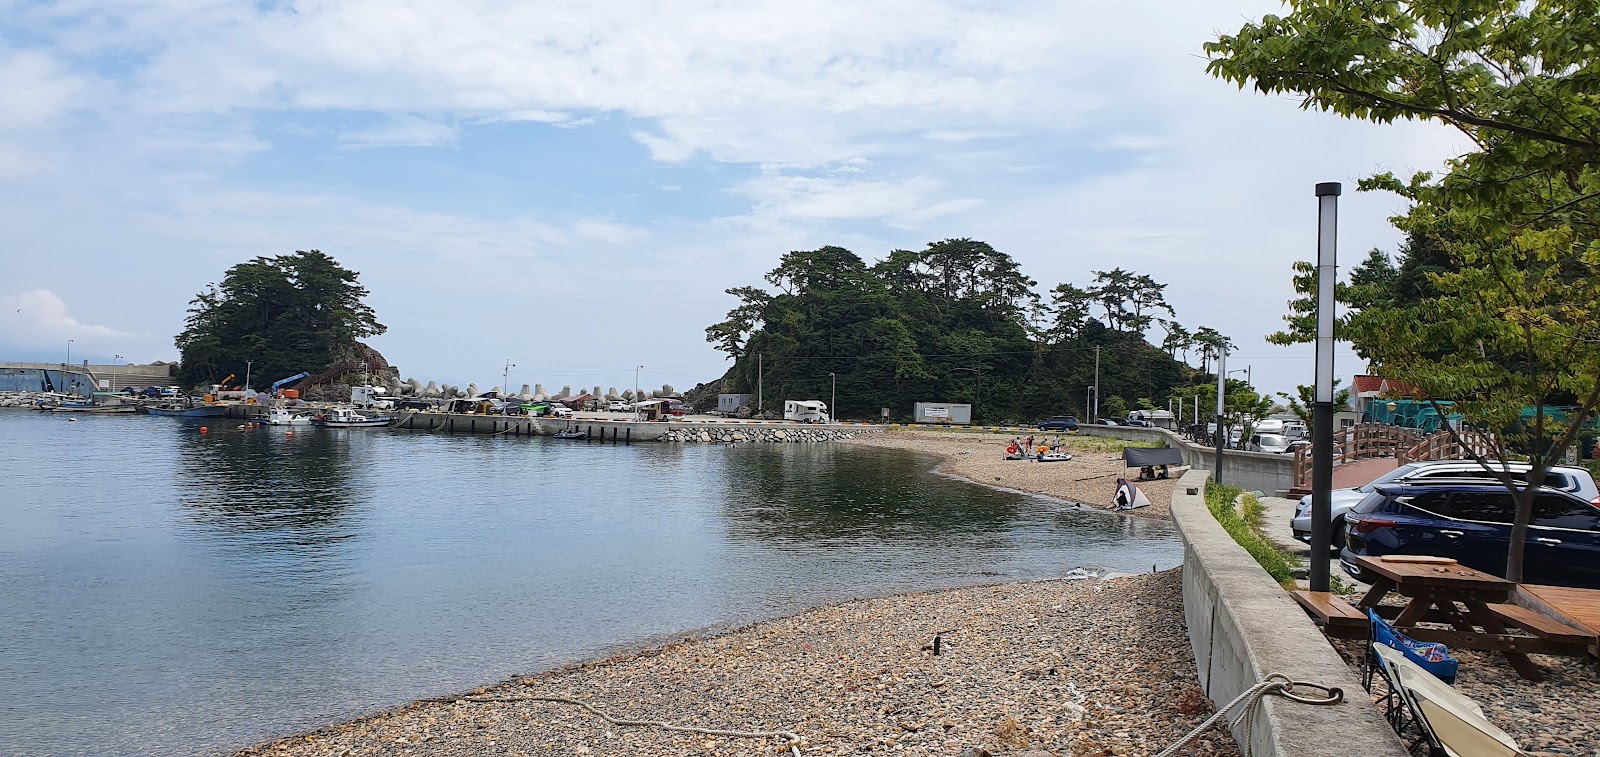 Zdjęcie Hando Beach - popularne miejsce wśród znawców relaksu